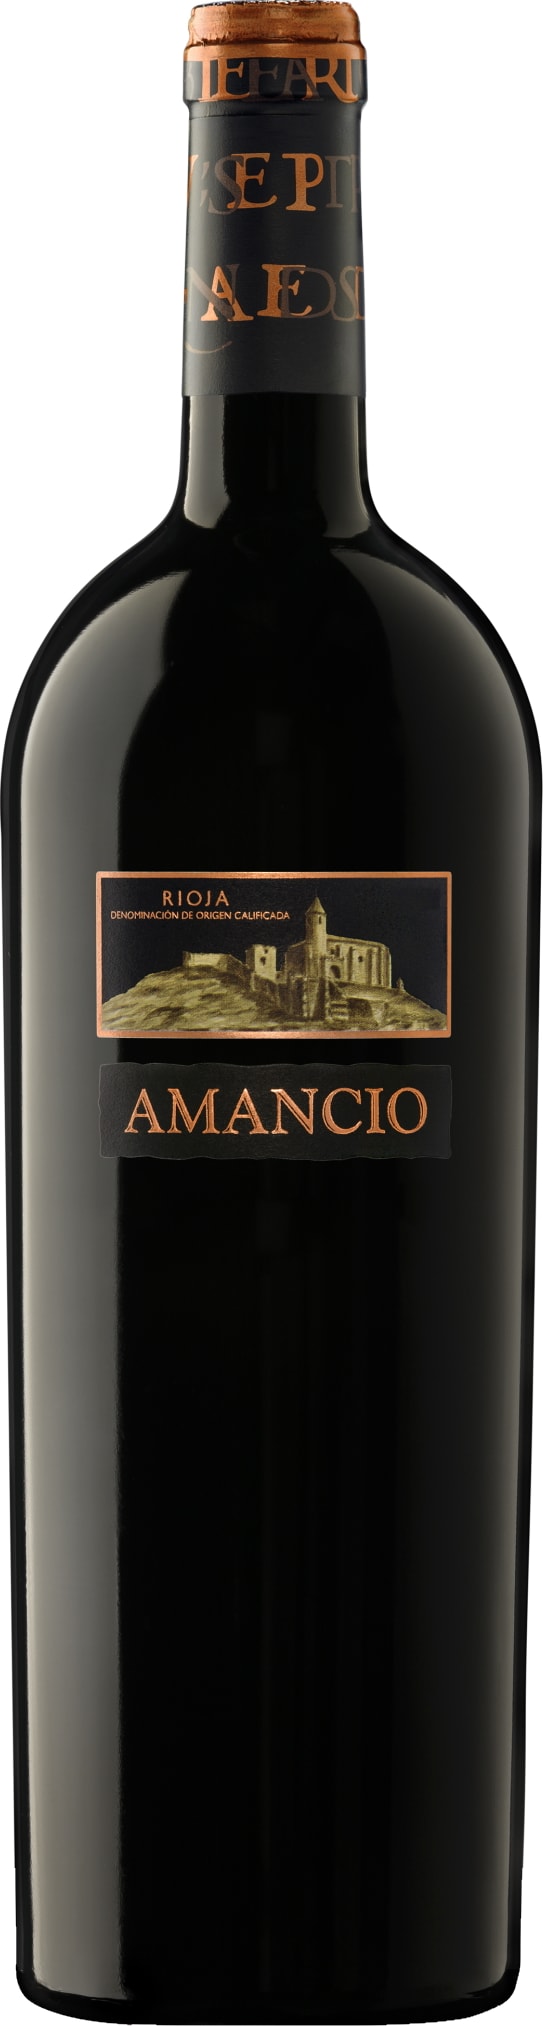 Vinedos Sierra Cantabria Rioja Amancio 2020 75cl - Buy Vinedos Sierra Cantabria Wines from GREAT WINES DIRECT wine shop